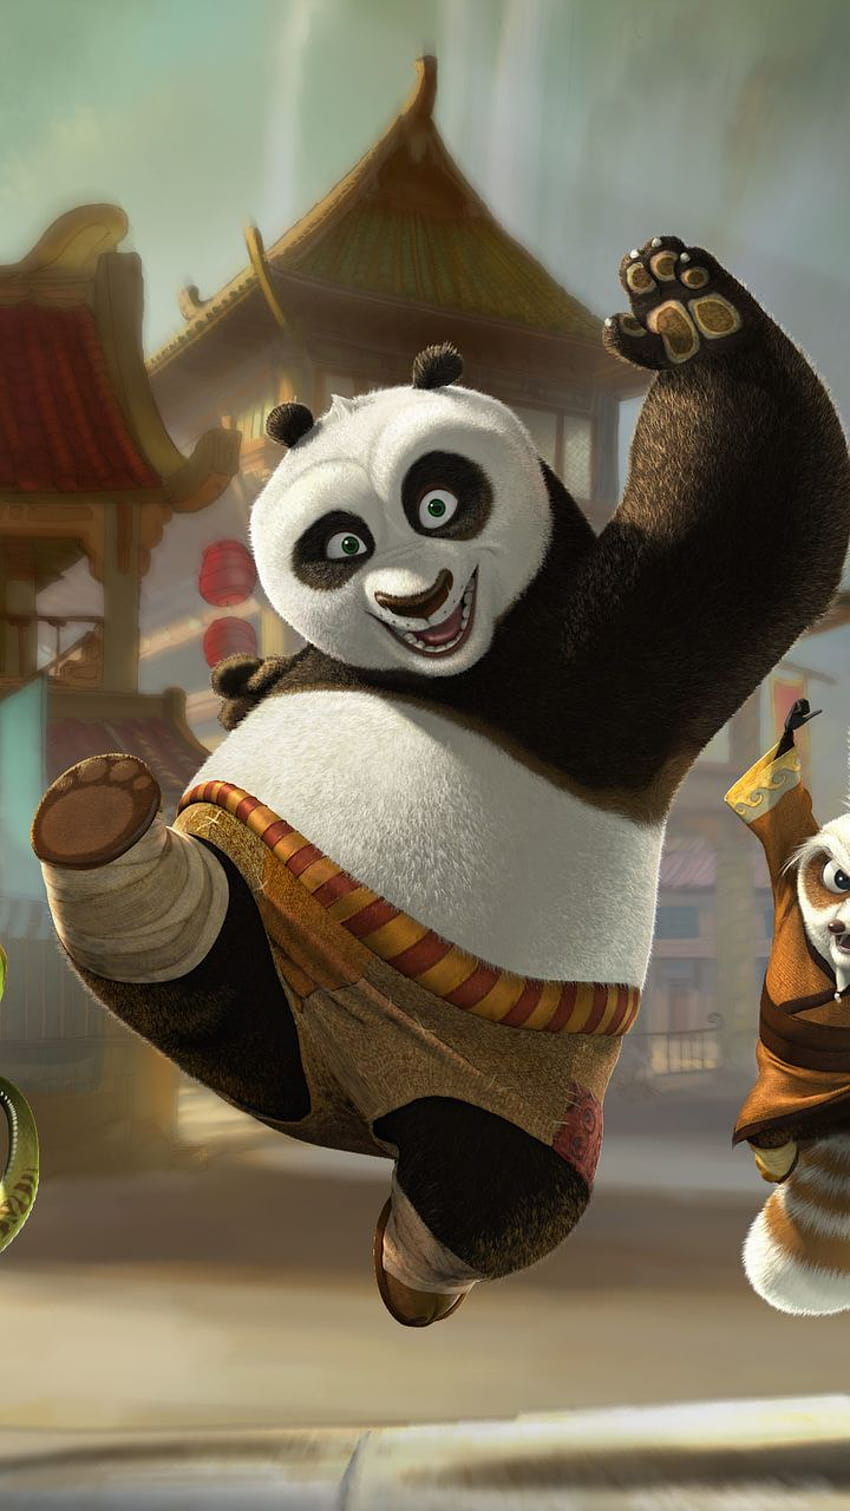 720x1280 kung fu panda, po, cartoon, kung fu panda, master oogway, kung fu panda movie mobile android HD phone wallpaper